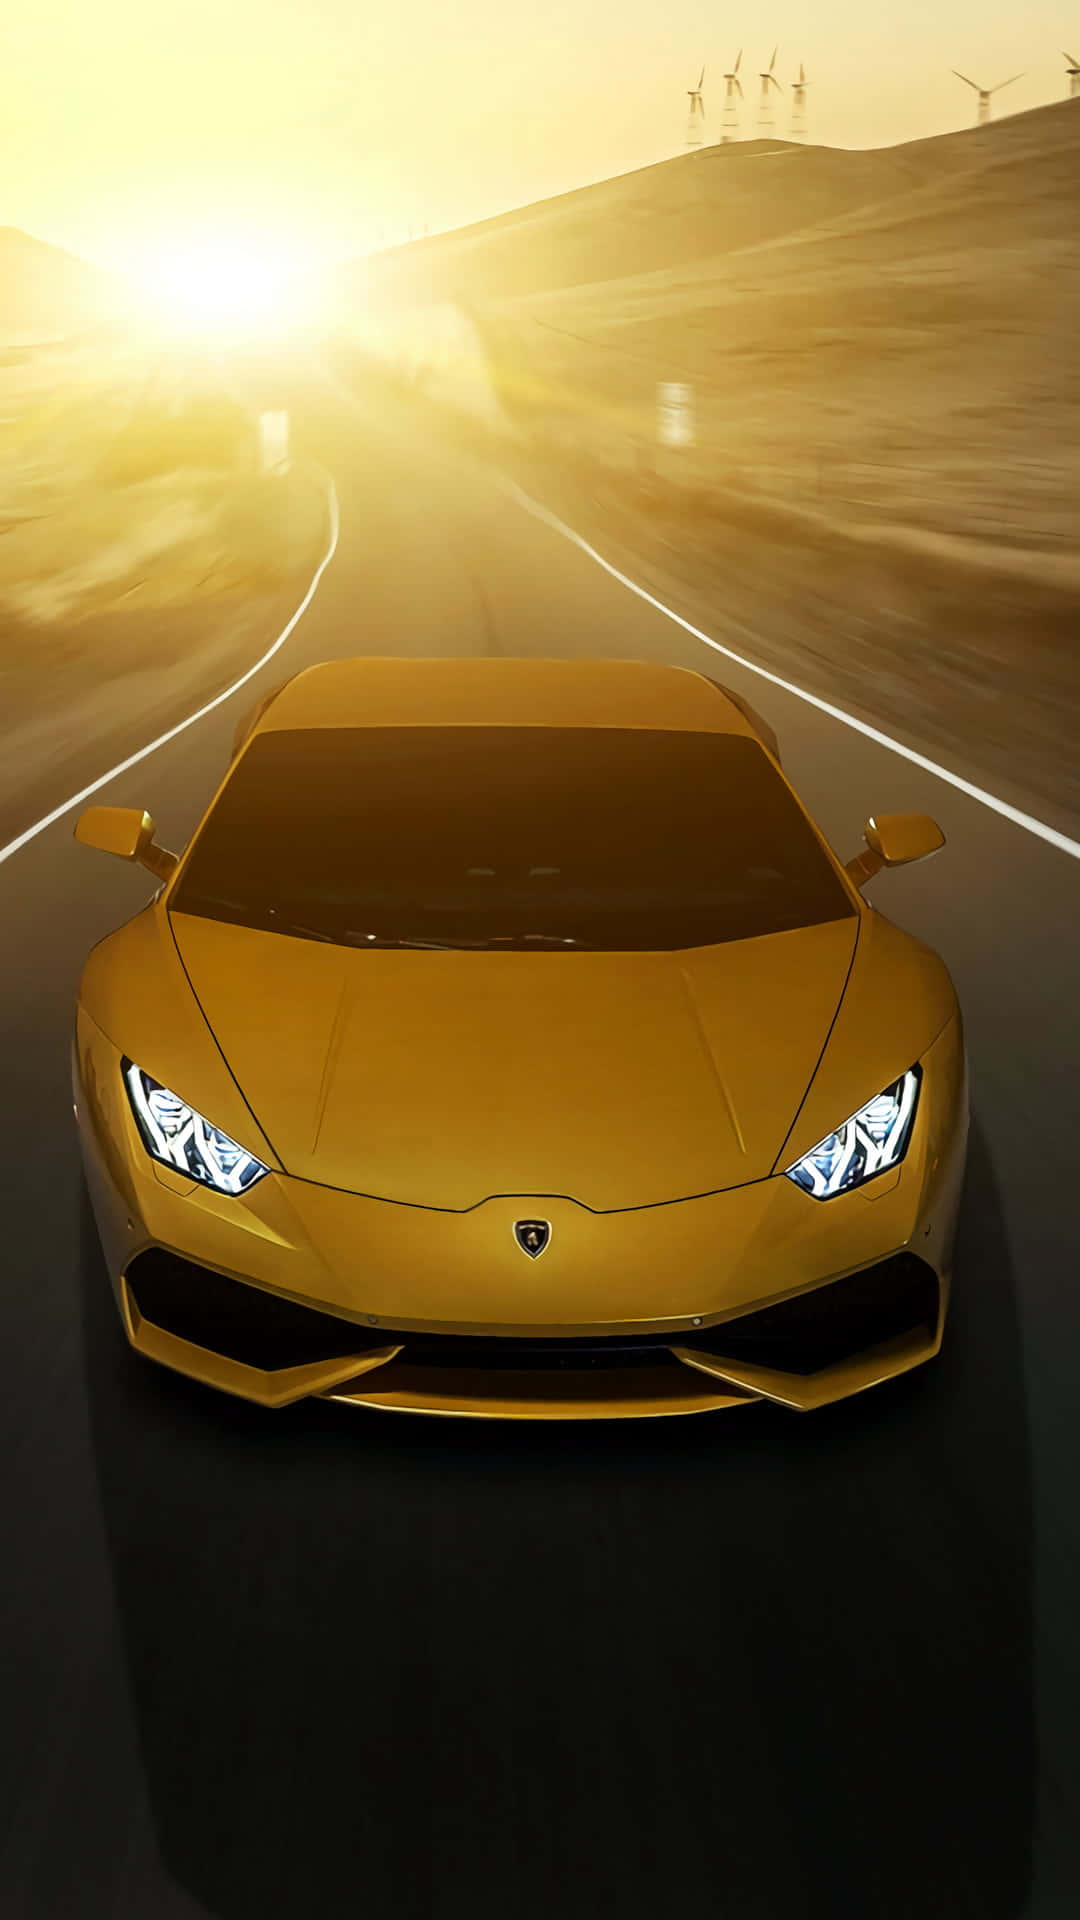 Nocheine Seltene Erscheinung, Der Goldene Lamborghini. Wallpaper